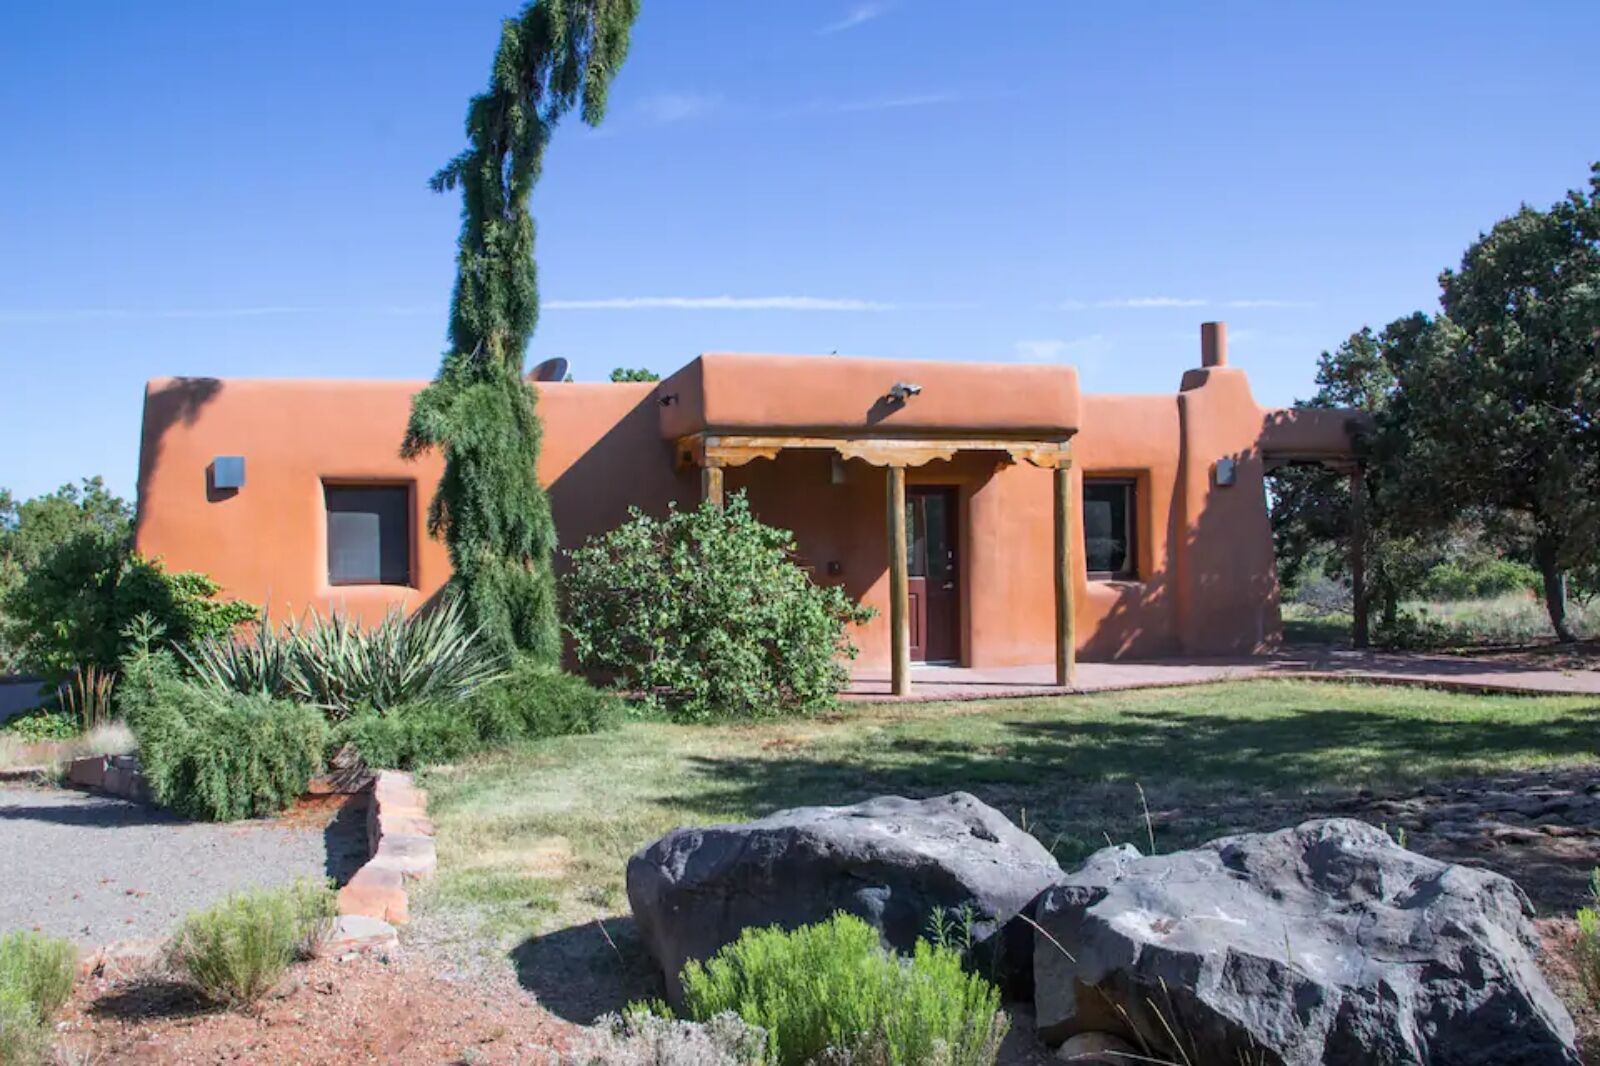 Airbnb in Santa Fe